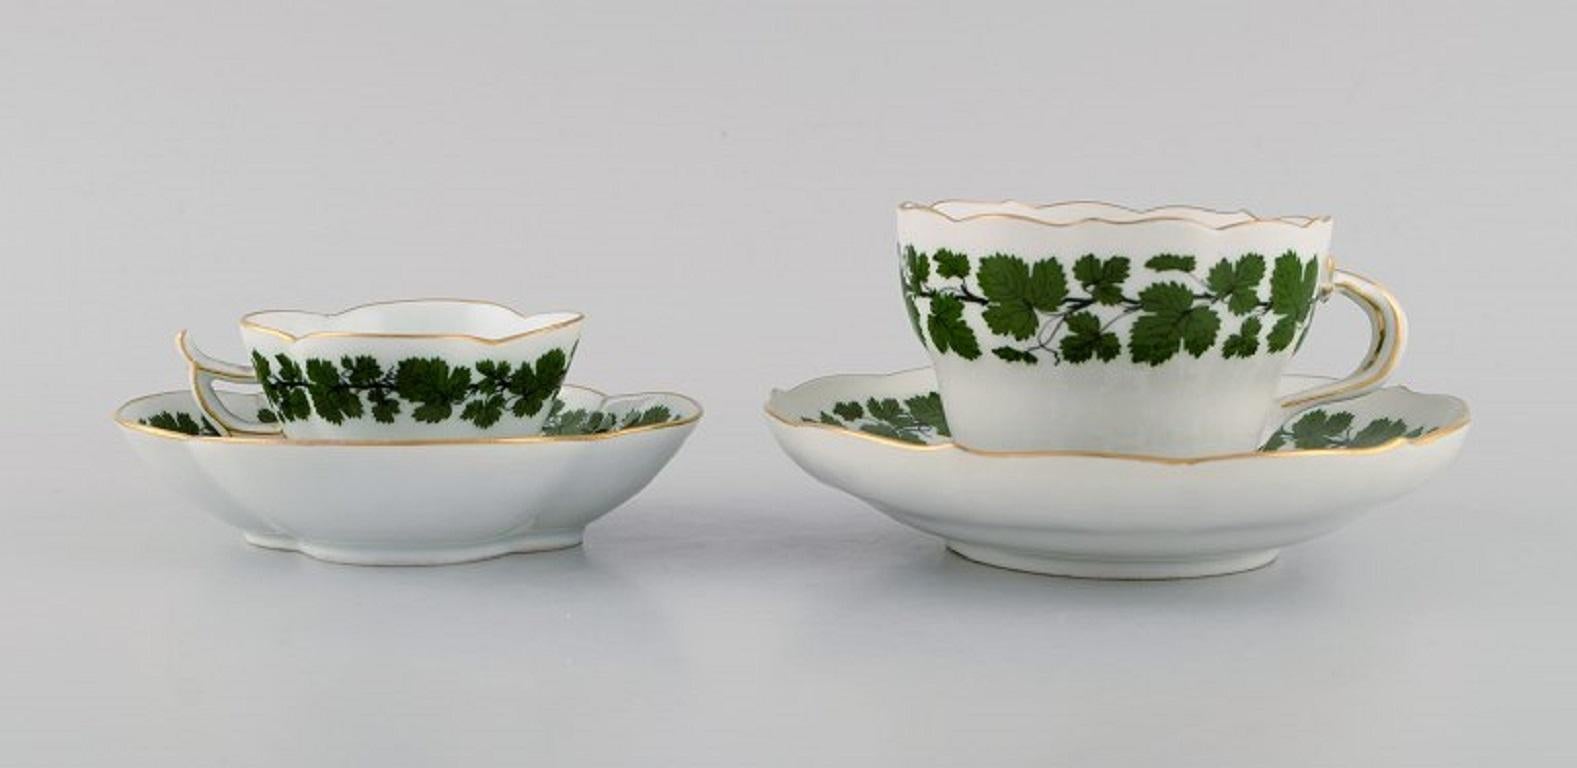 Tasse à moka et à thé Meissen Green Ivy Vine Leaf en porcelaine peinte à la main avec bord doré. 
années 20 / 30.
La tasse à thé mesure : 9 x 6,5 cm.
Diamètre de la soucoupe : 14,8 cm.
La tasse à moka mesure : 7 x 4,5 cm.
Diamètre de la